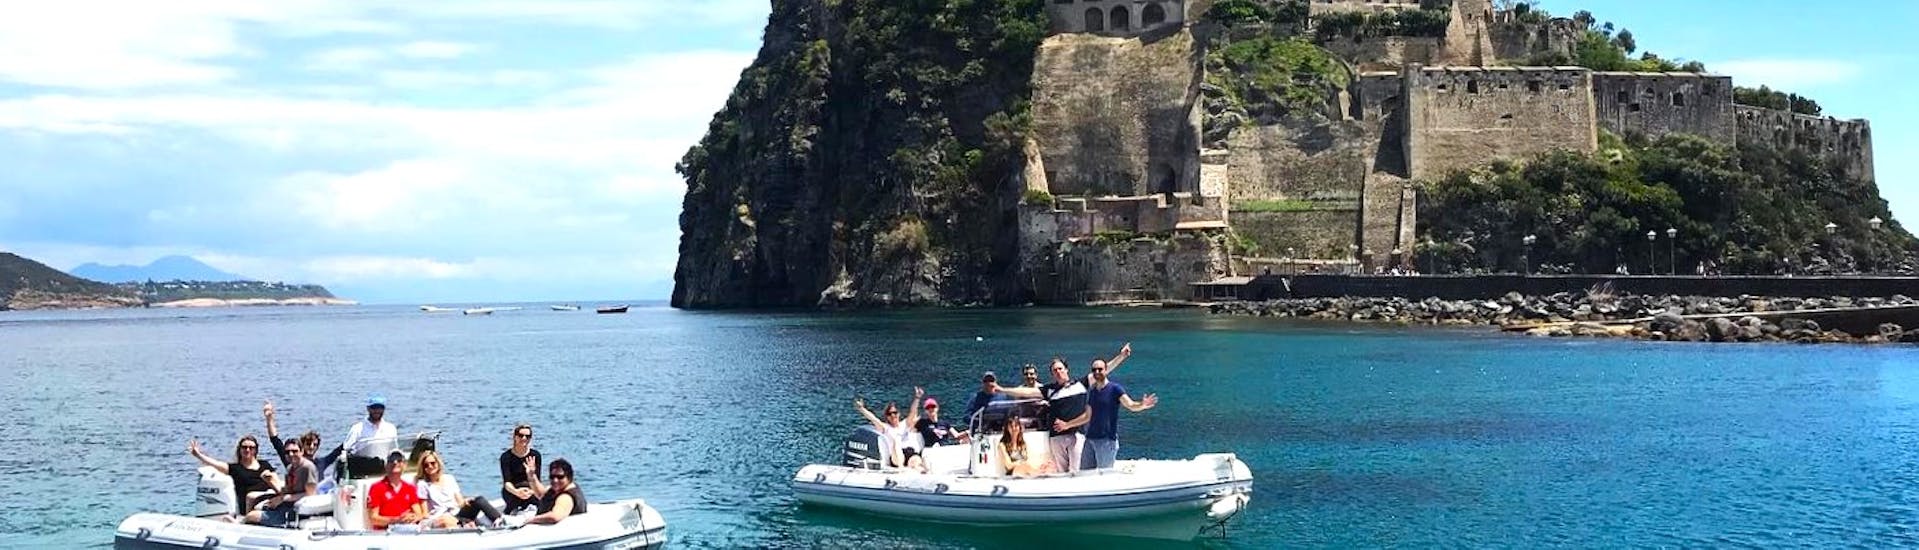 Uitzicht op het Aragonese kasteel dat je kunt zien tijdens de privé RIB boottocht naar Ischia en Procida met aperitief en snorkelen met Seaside Napoli.